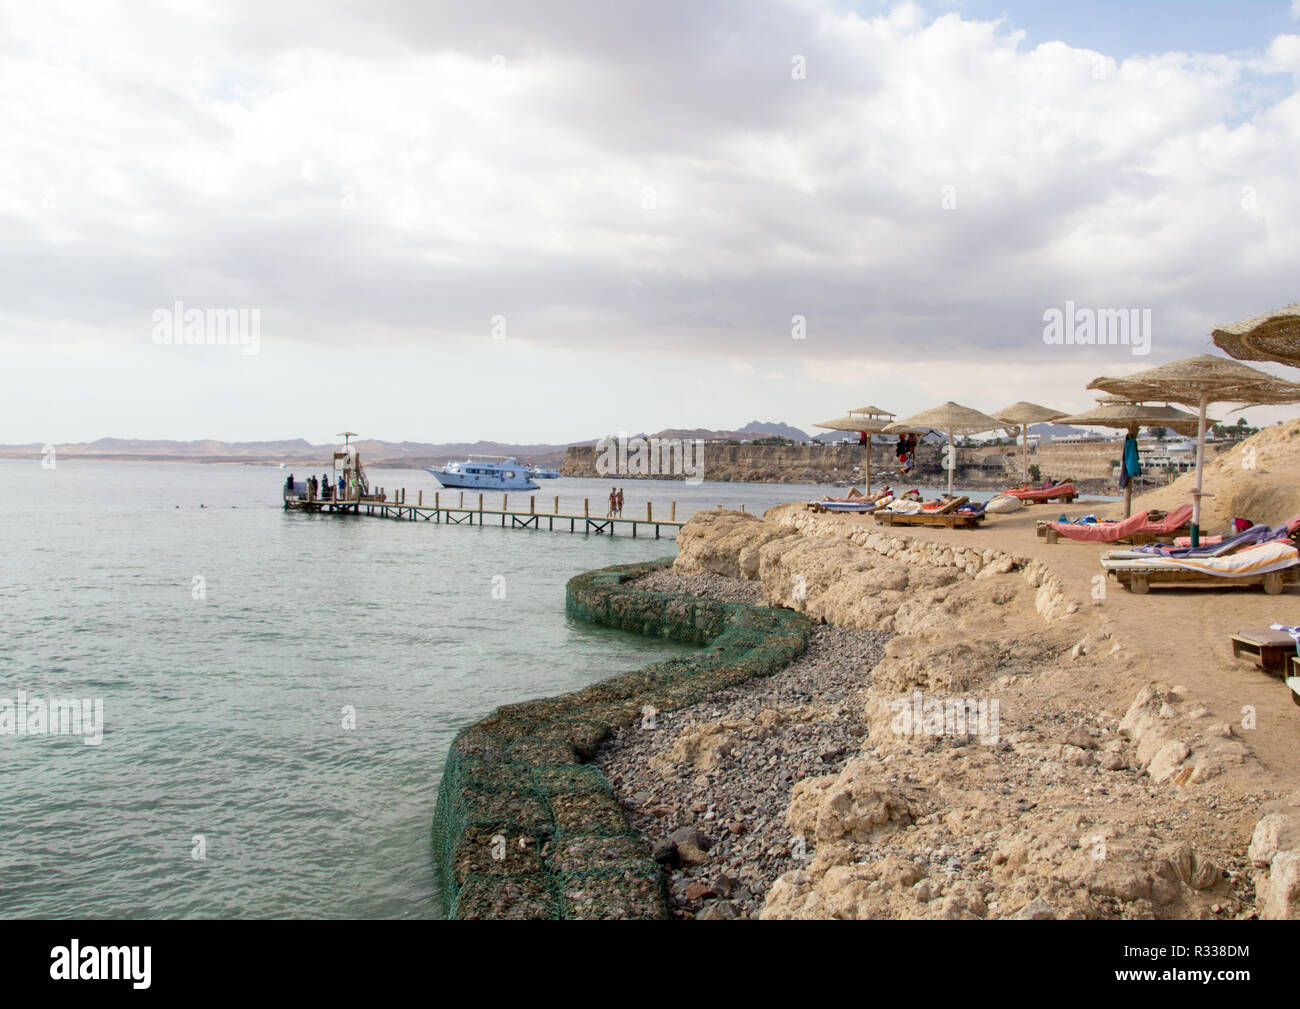 El-Shaikh Sharm, Ägypten - November 2, 2018: - Foto für die Küste des Roten Meeres in der ägyptischen Stadt Scharm el-Scheich, die Wasser zeigen und einige Felsen und Stockfoto